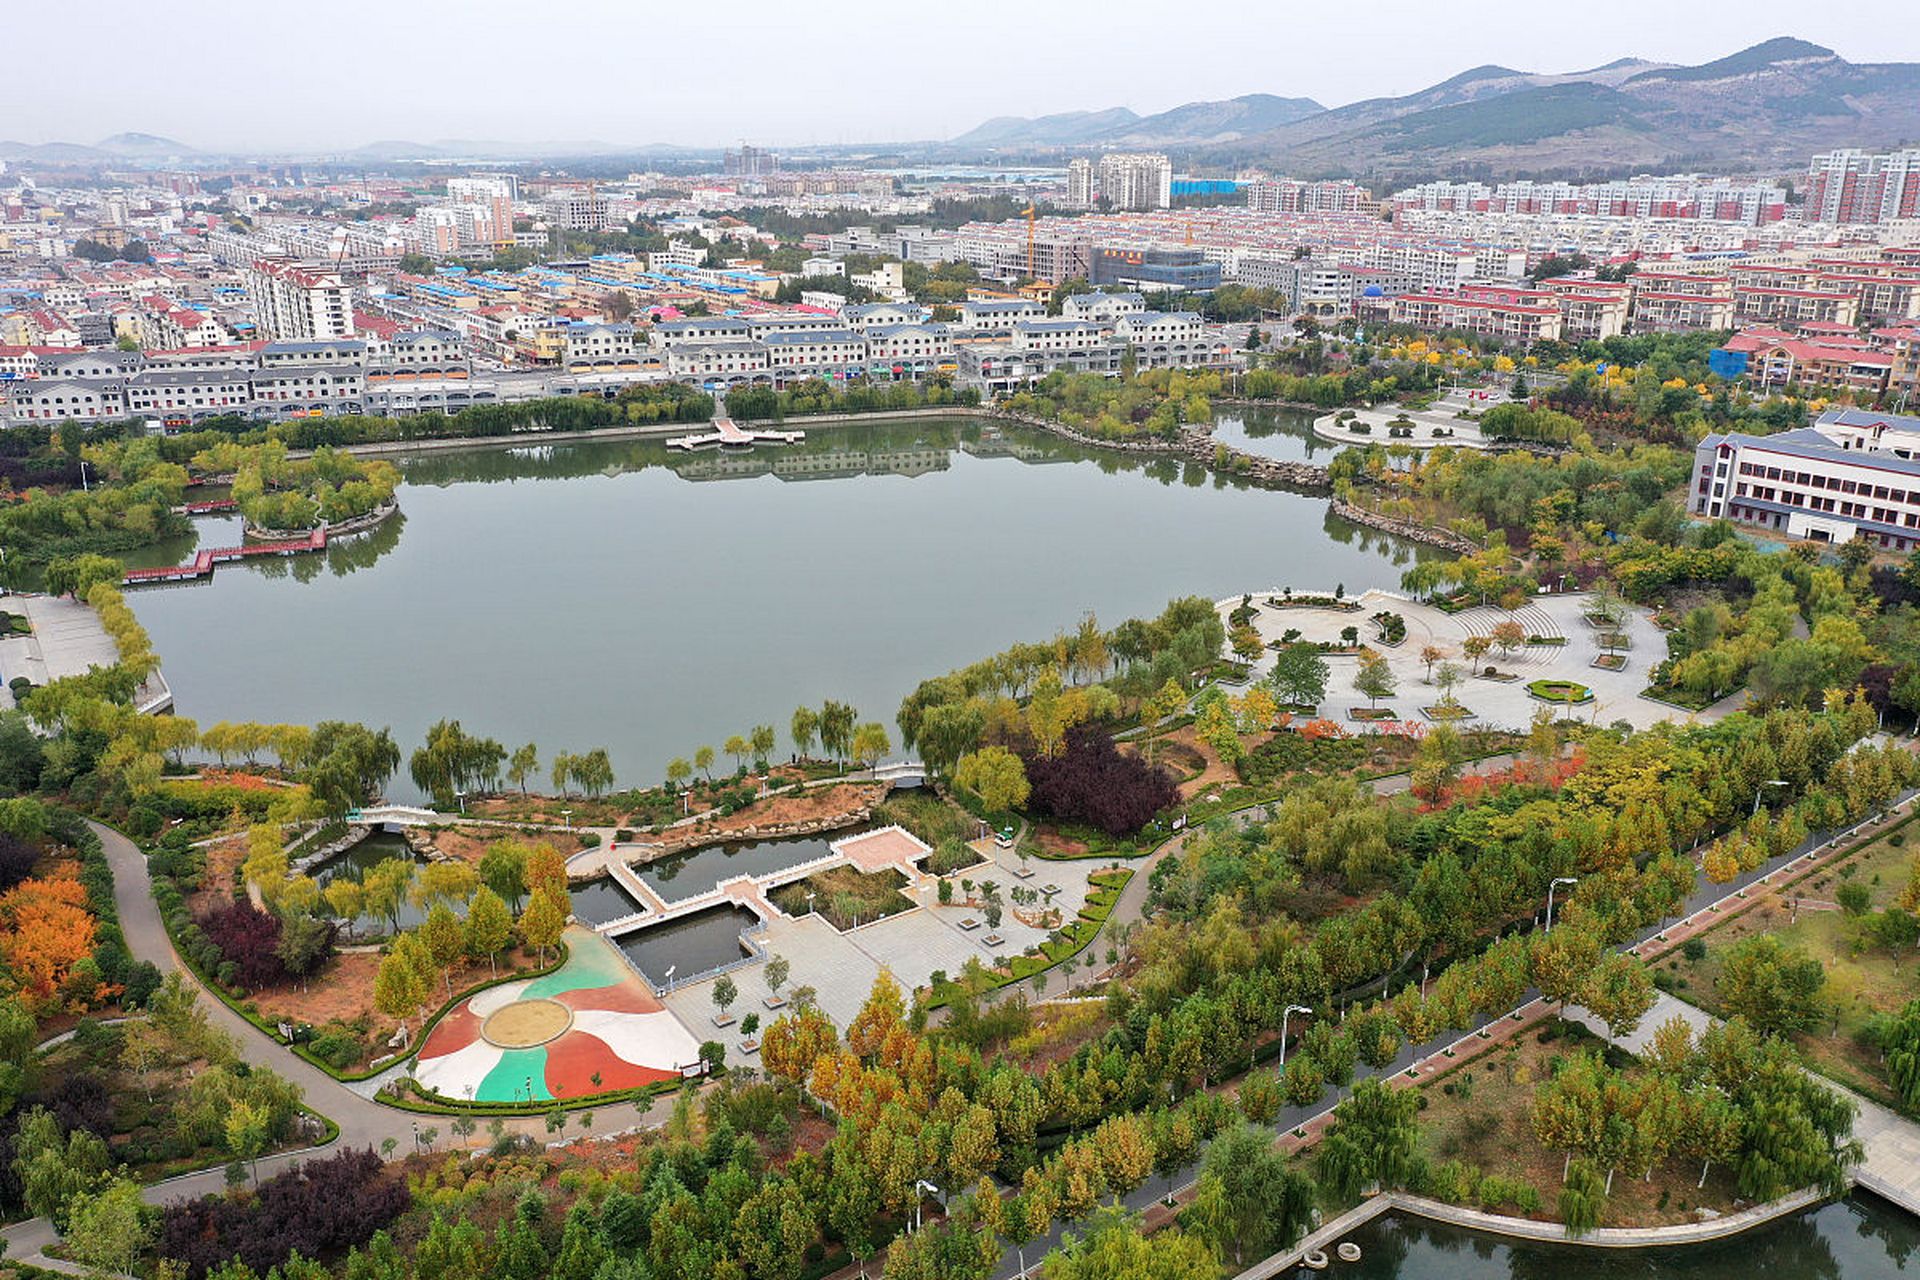 随州市位于湖北省北部,拥有丰富的旅游资源,包括曾侯乙墓,博物馆,银杏